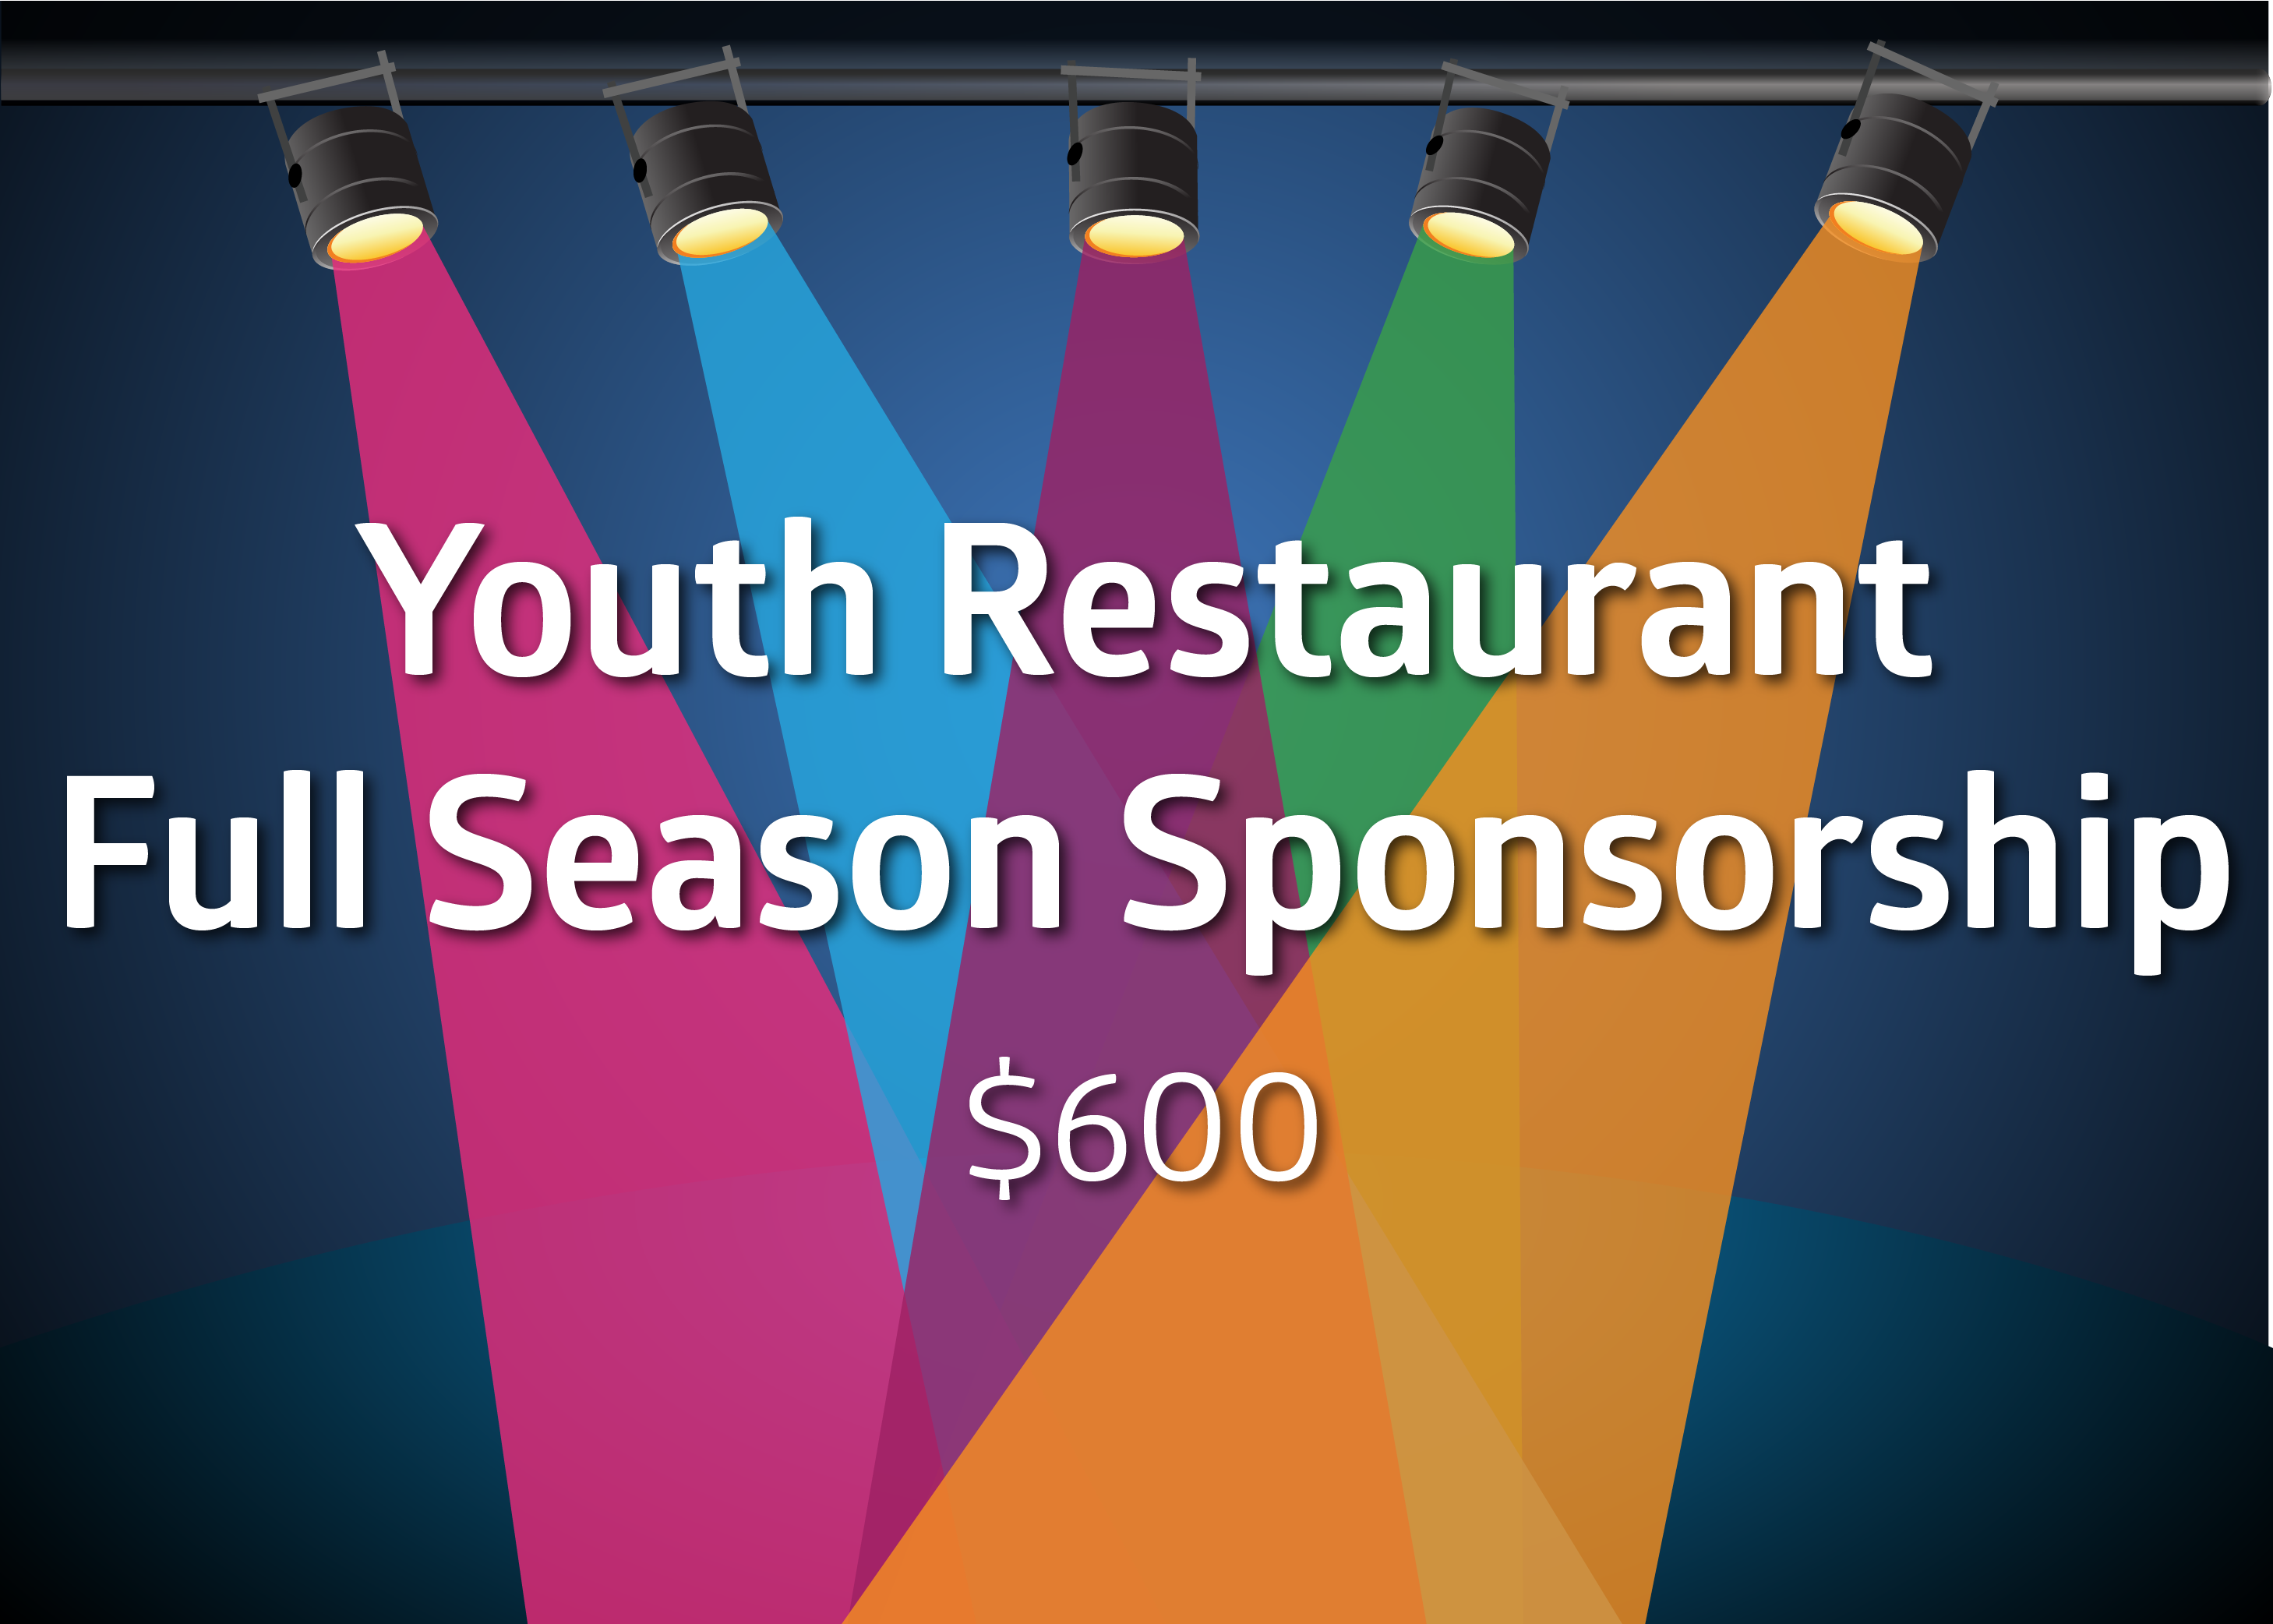 Youth Restaurant Full Season Sponsorship